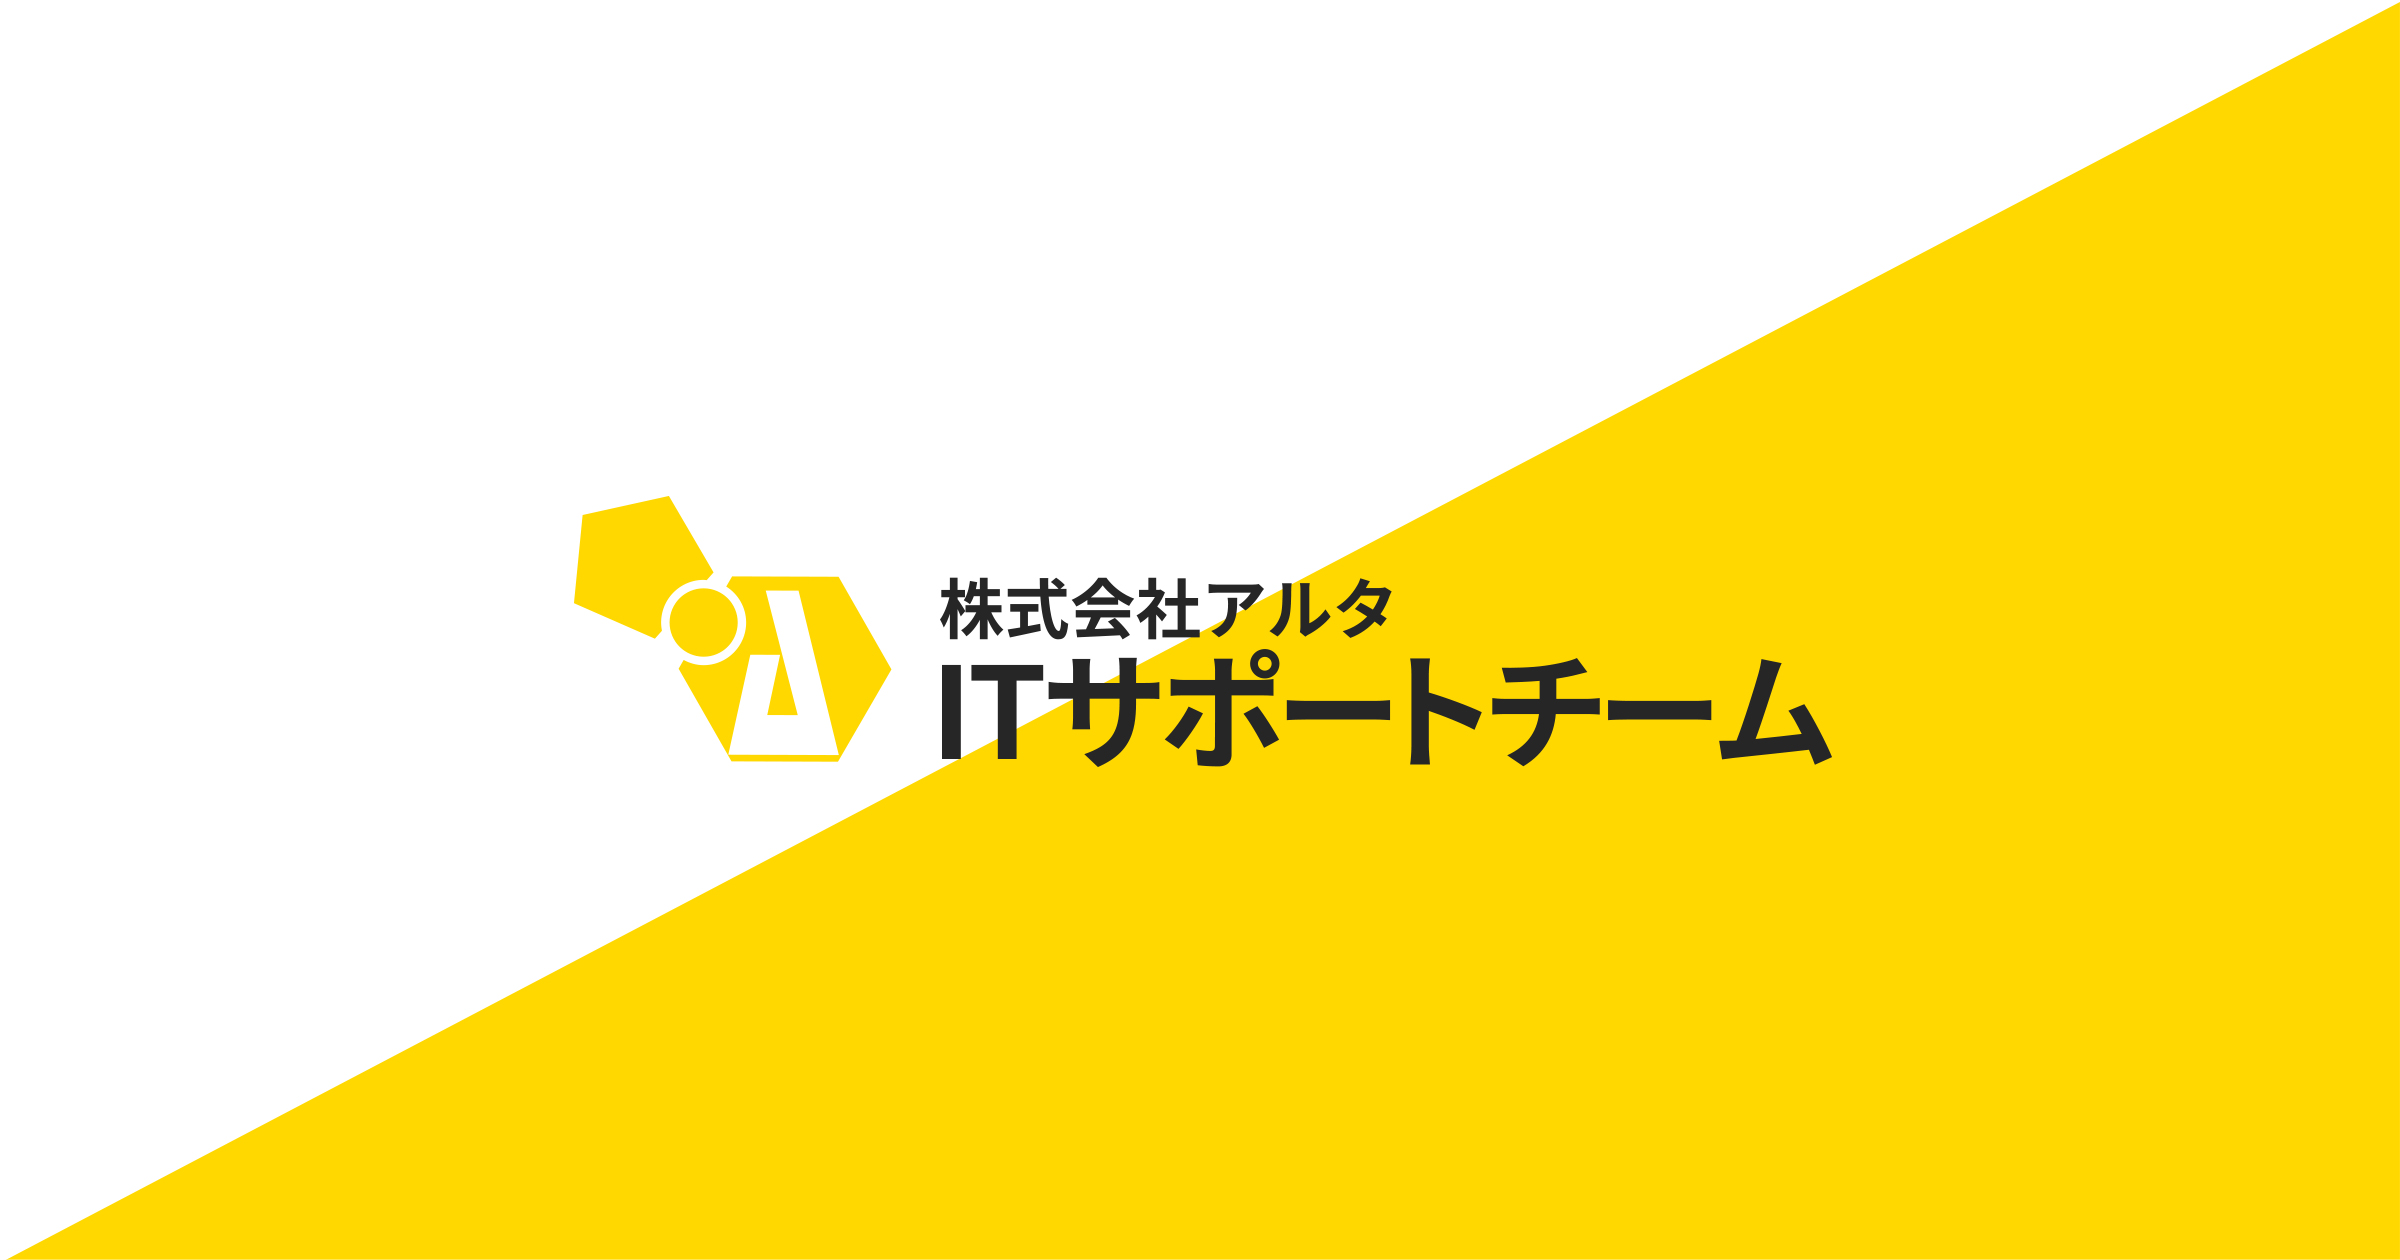 名古屋のICT・Web総合商社 株式会社アルタ ITサポートチーム